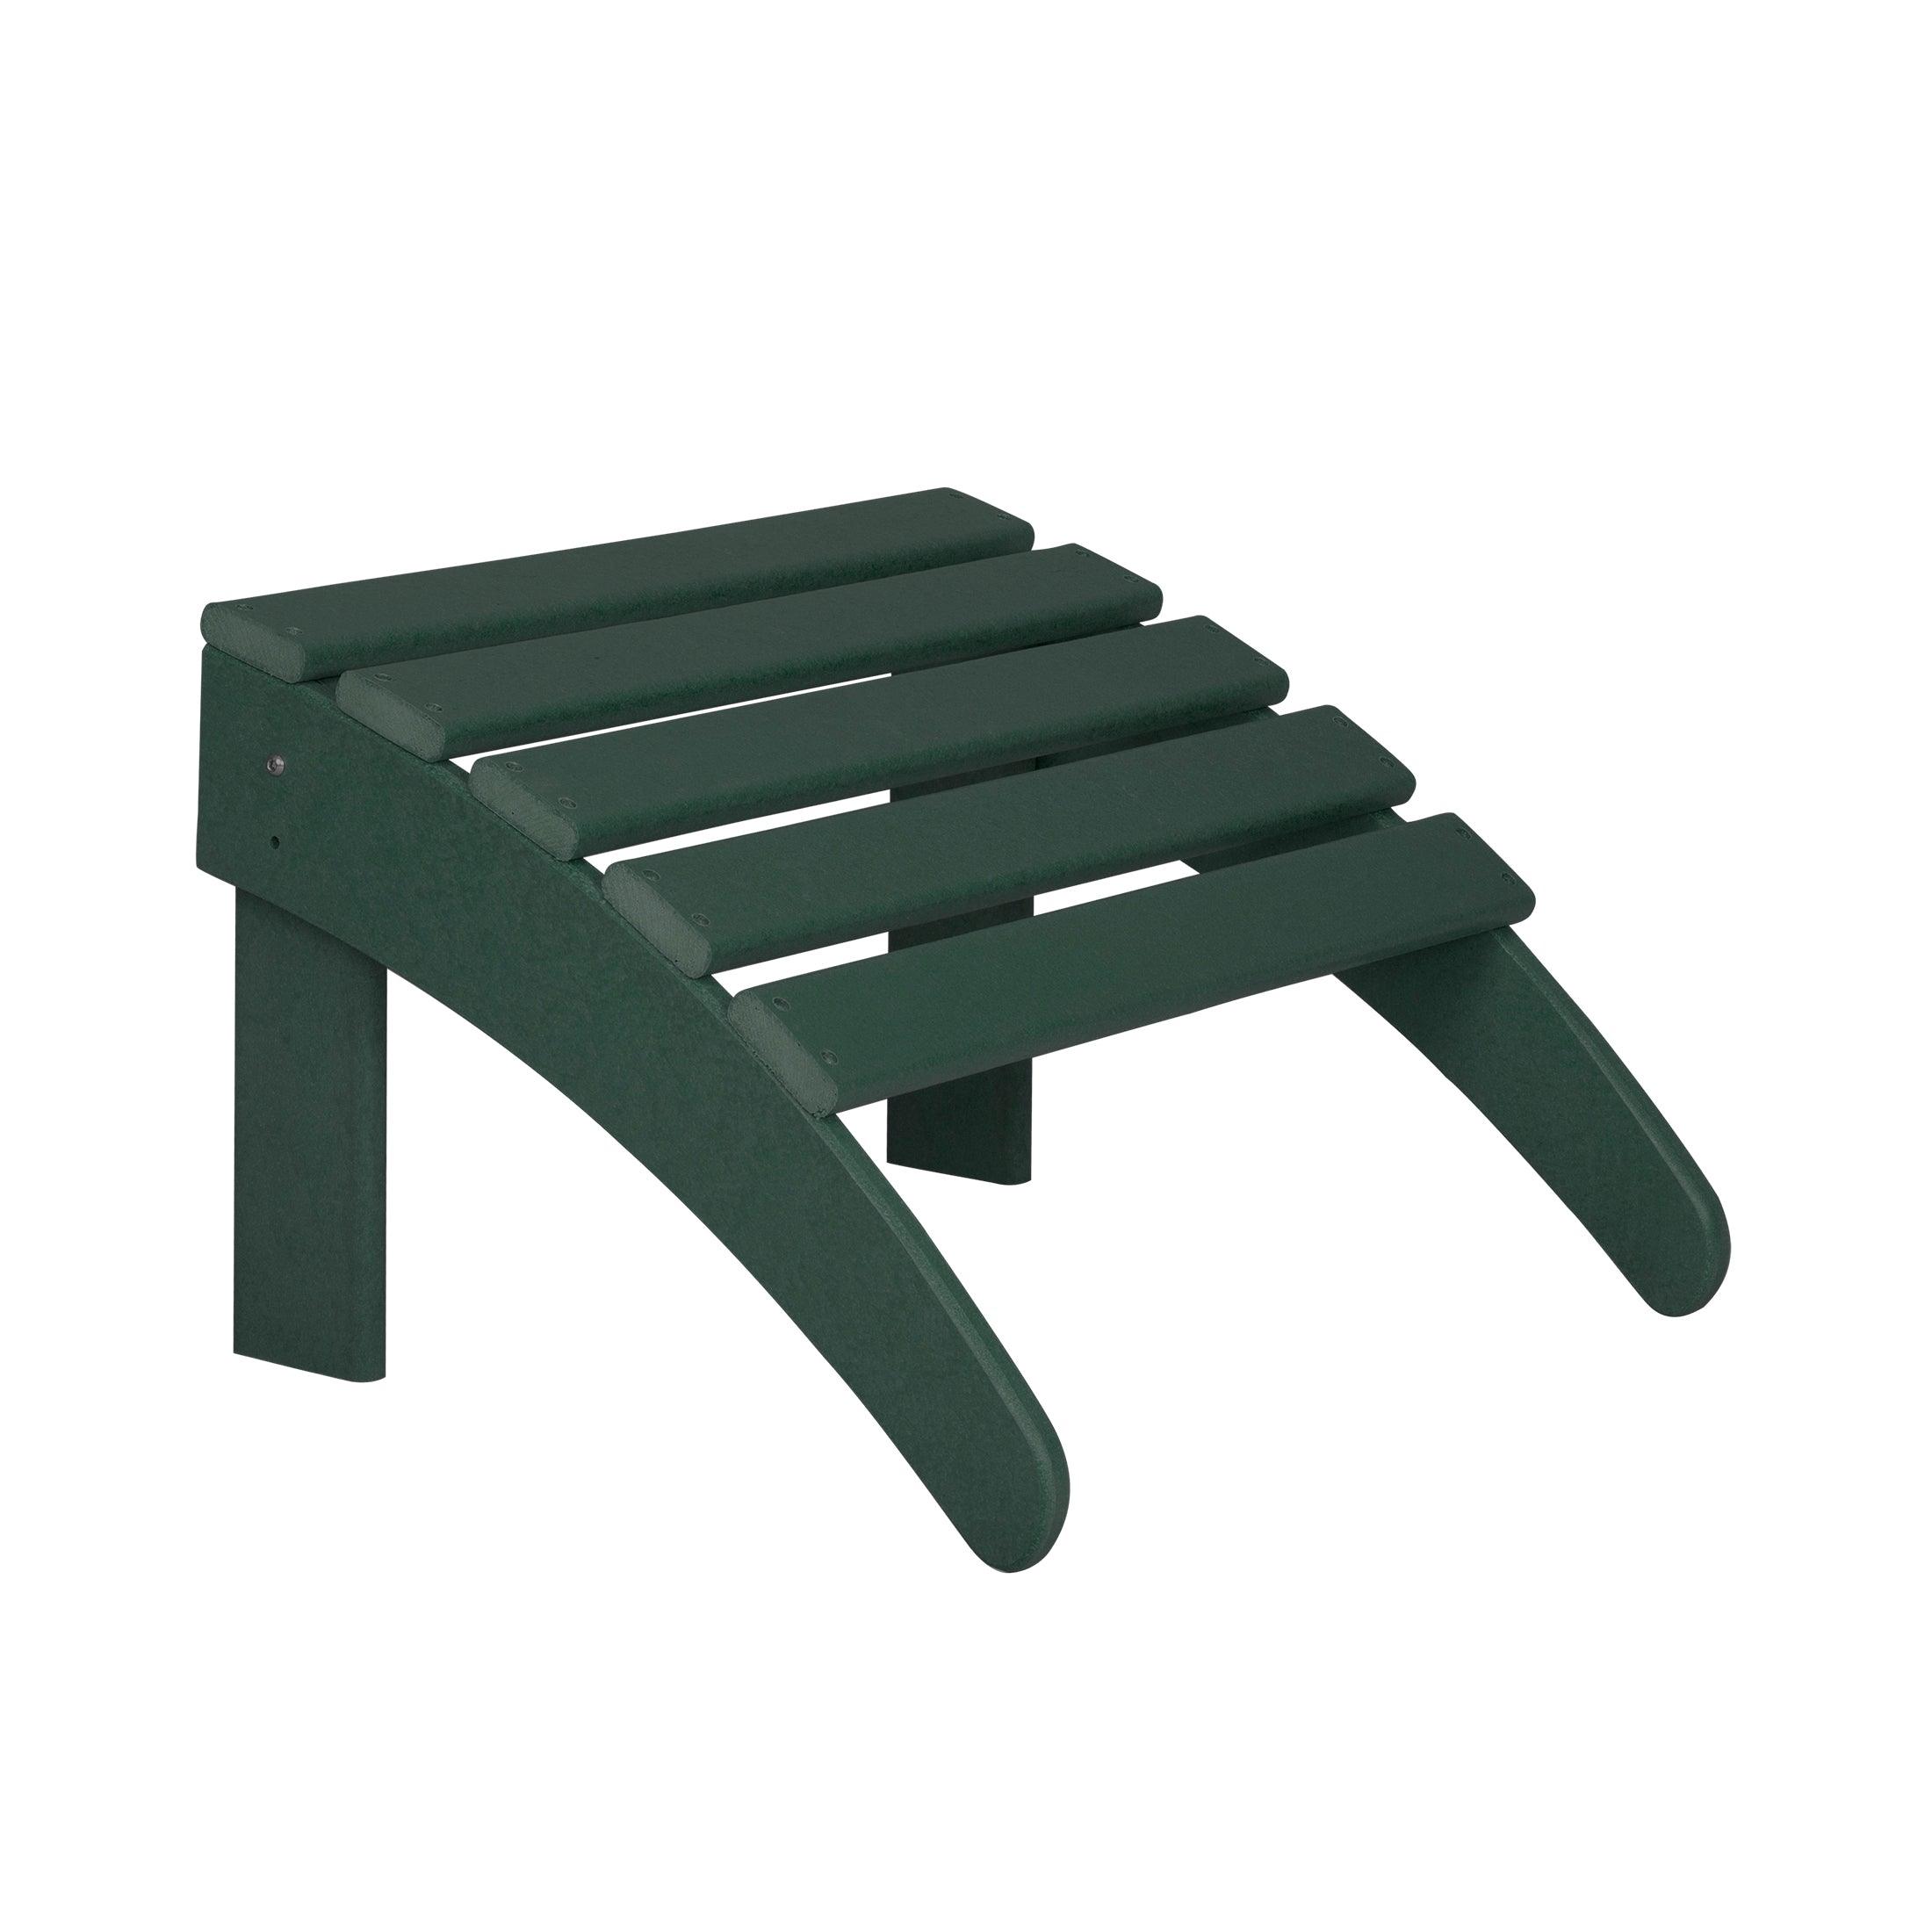 Costaelm Outdoor Adirondack Chair With Ottoman 2-Piece Set, Dark Green